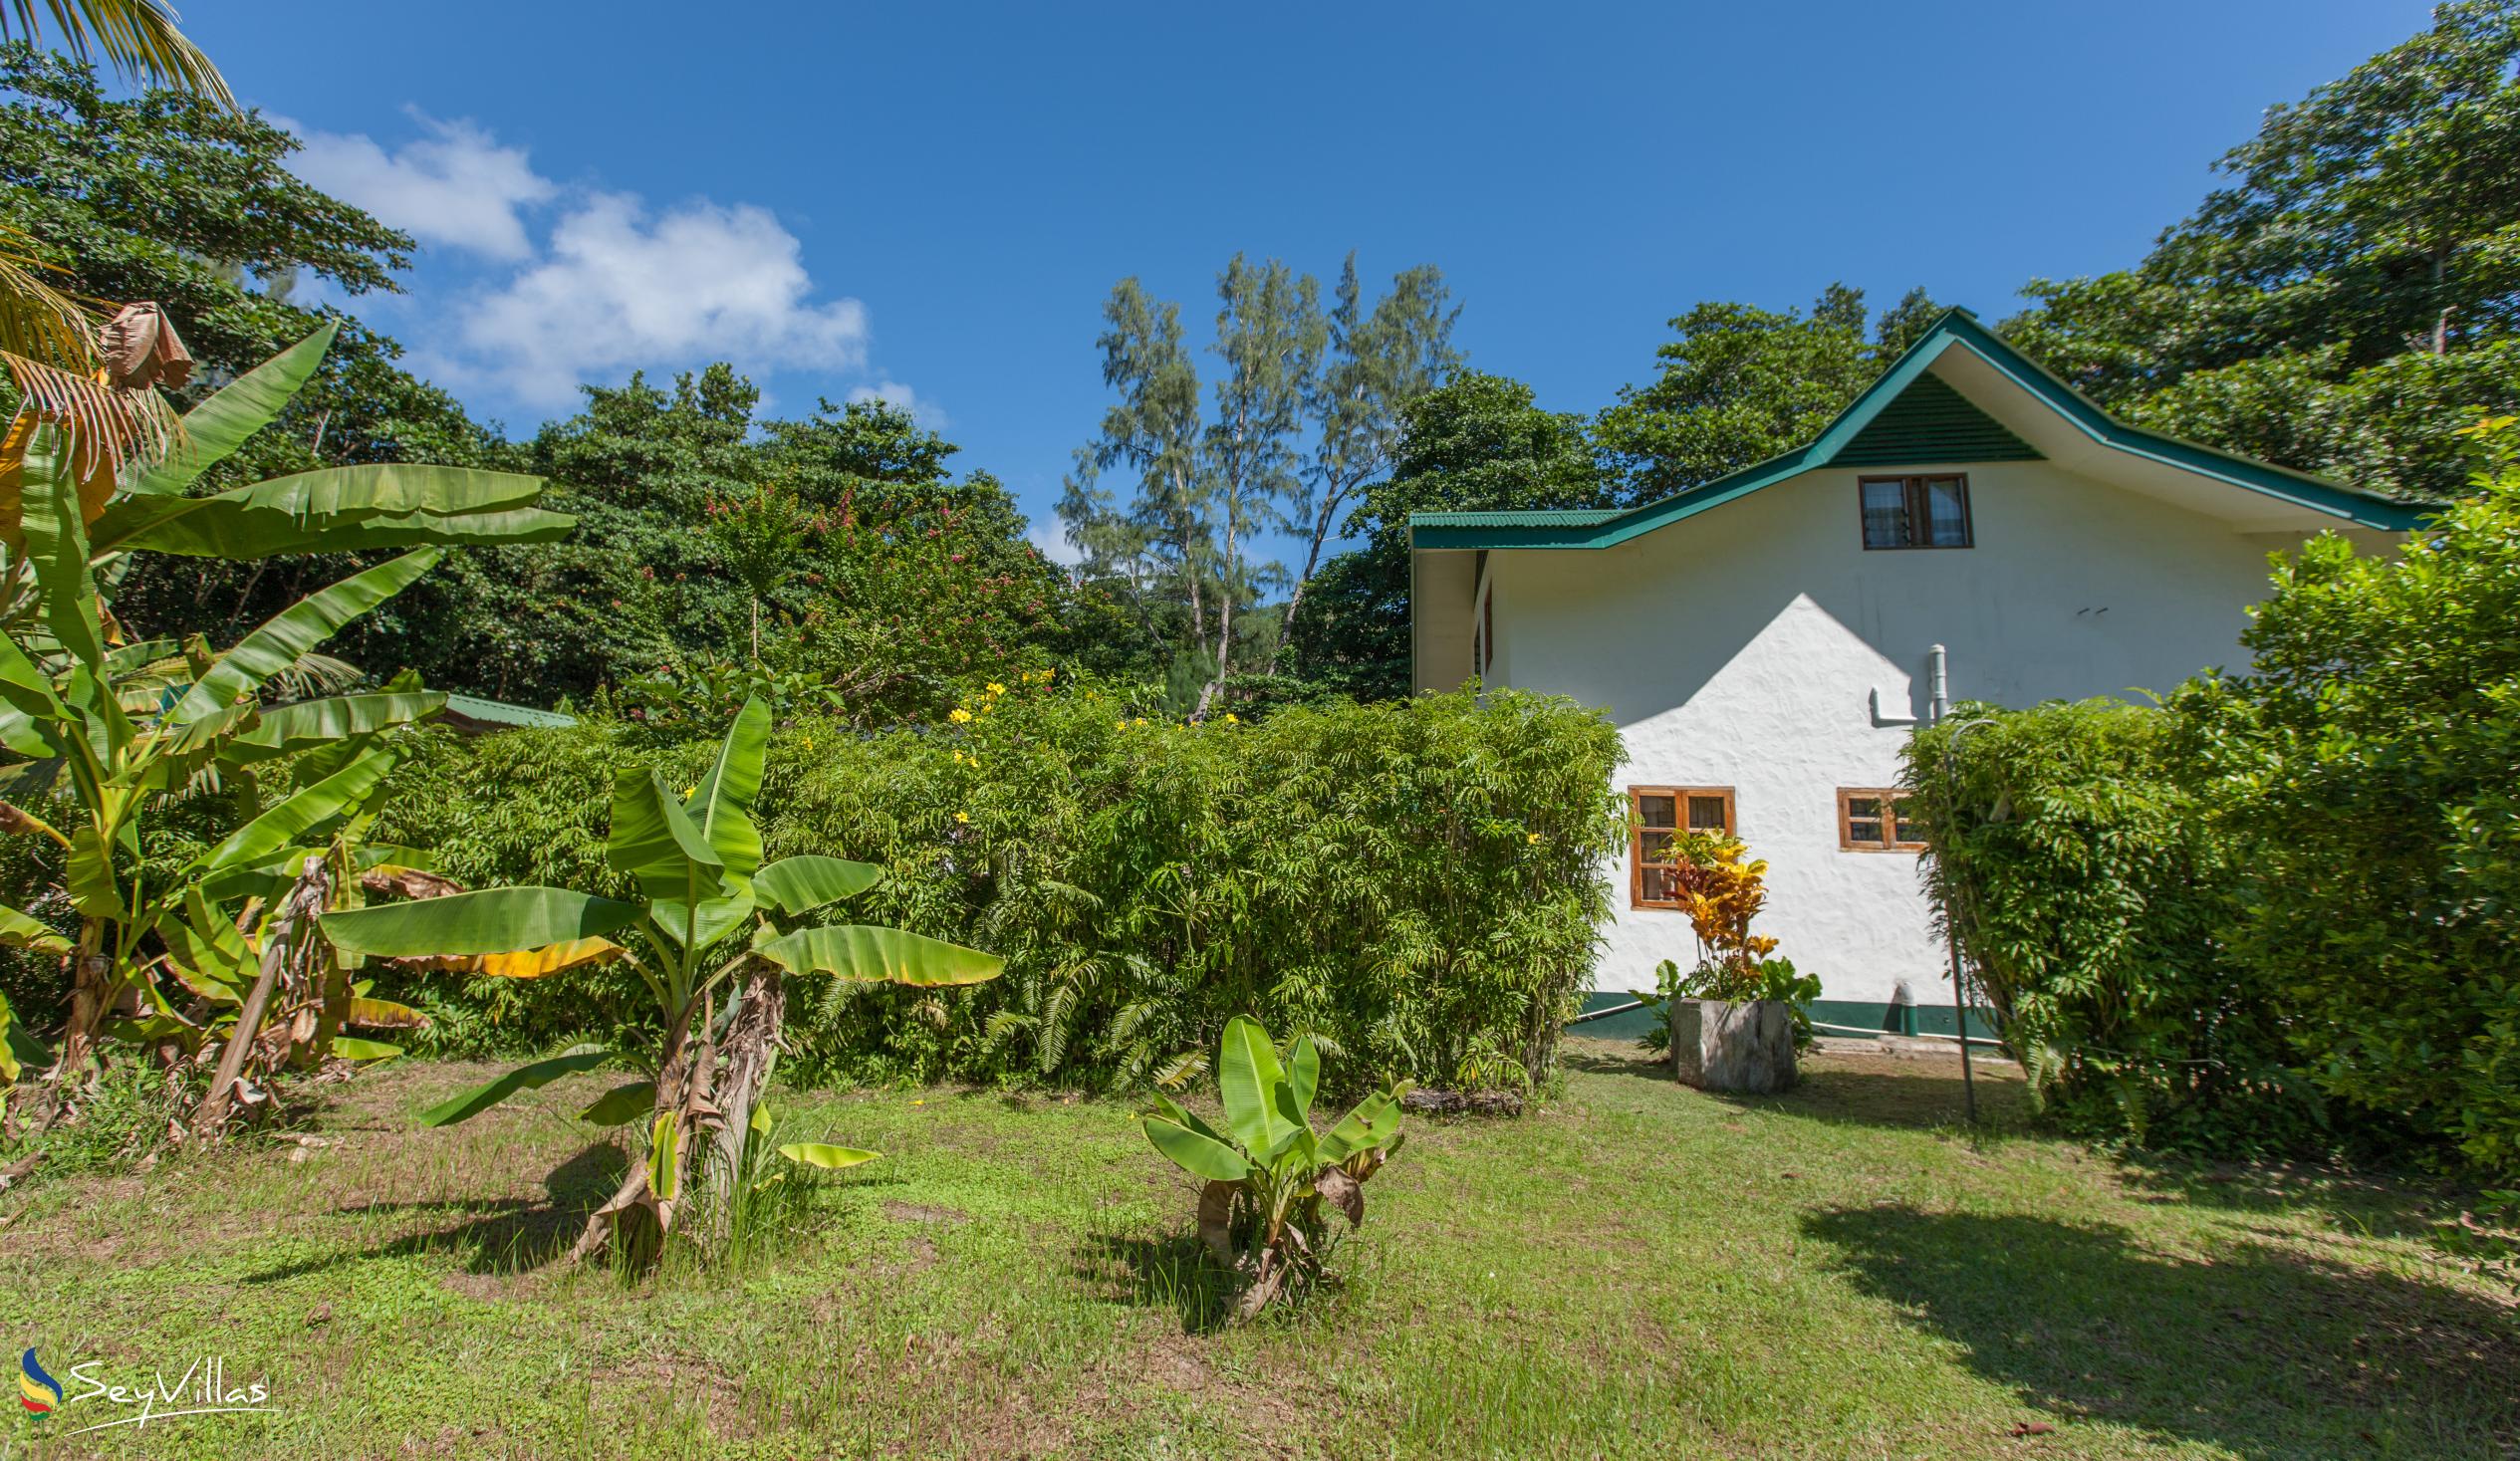 Foto 17: Tannette's Villa - Aussenbereich - La Digue (Seychellen)